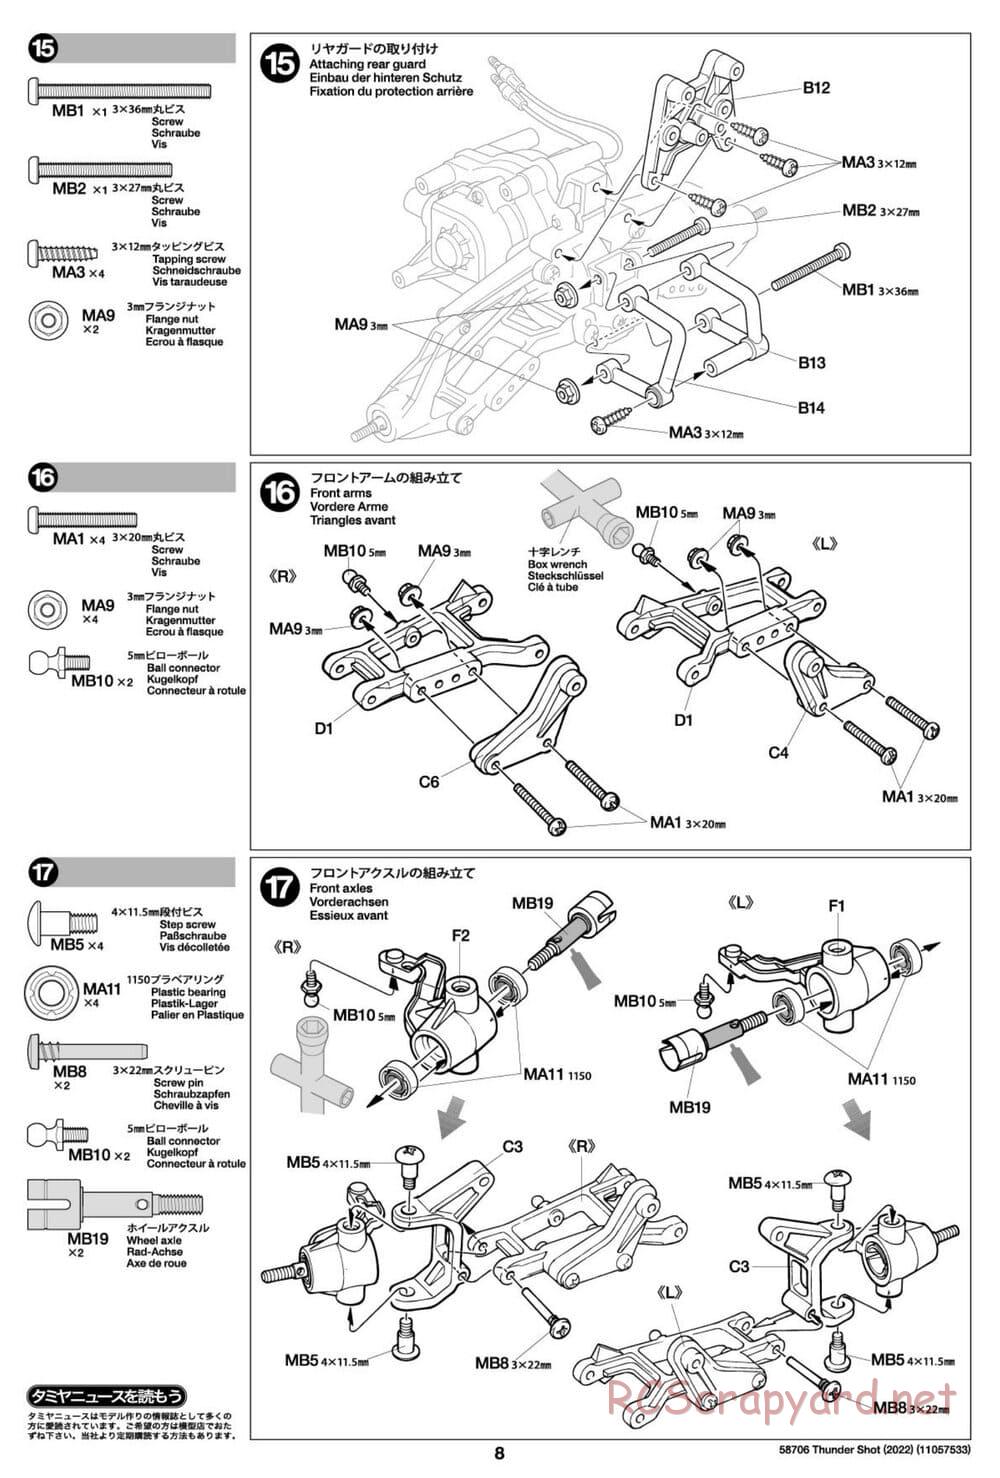 Tamiya - Thunder Shot (2022) - TS1/TS2 Chassis - Manual - Page 8